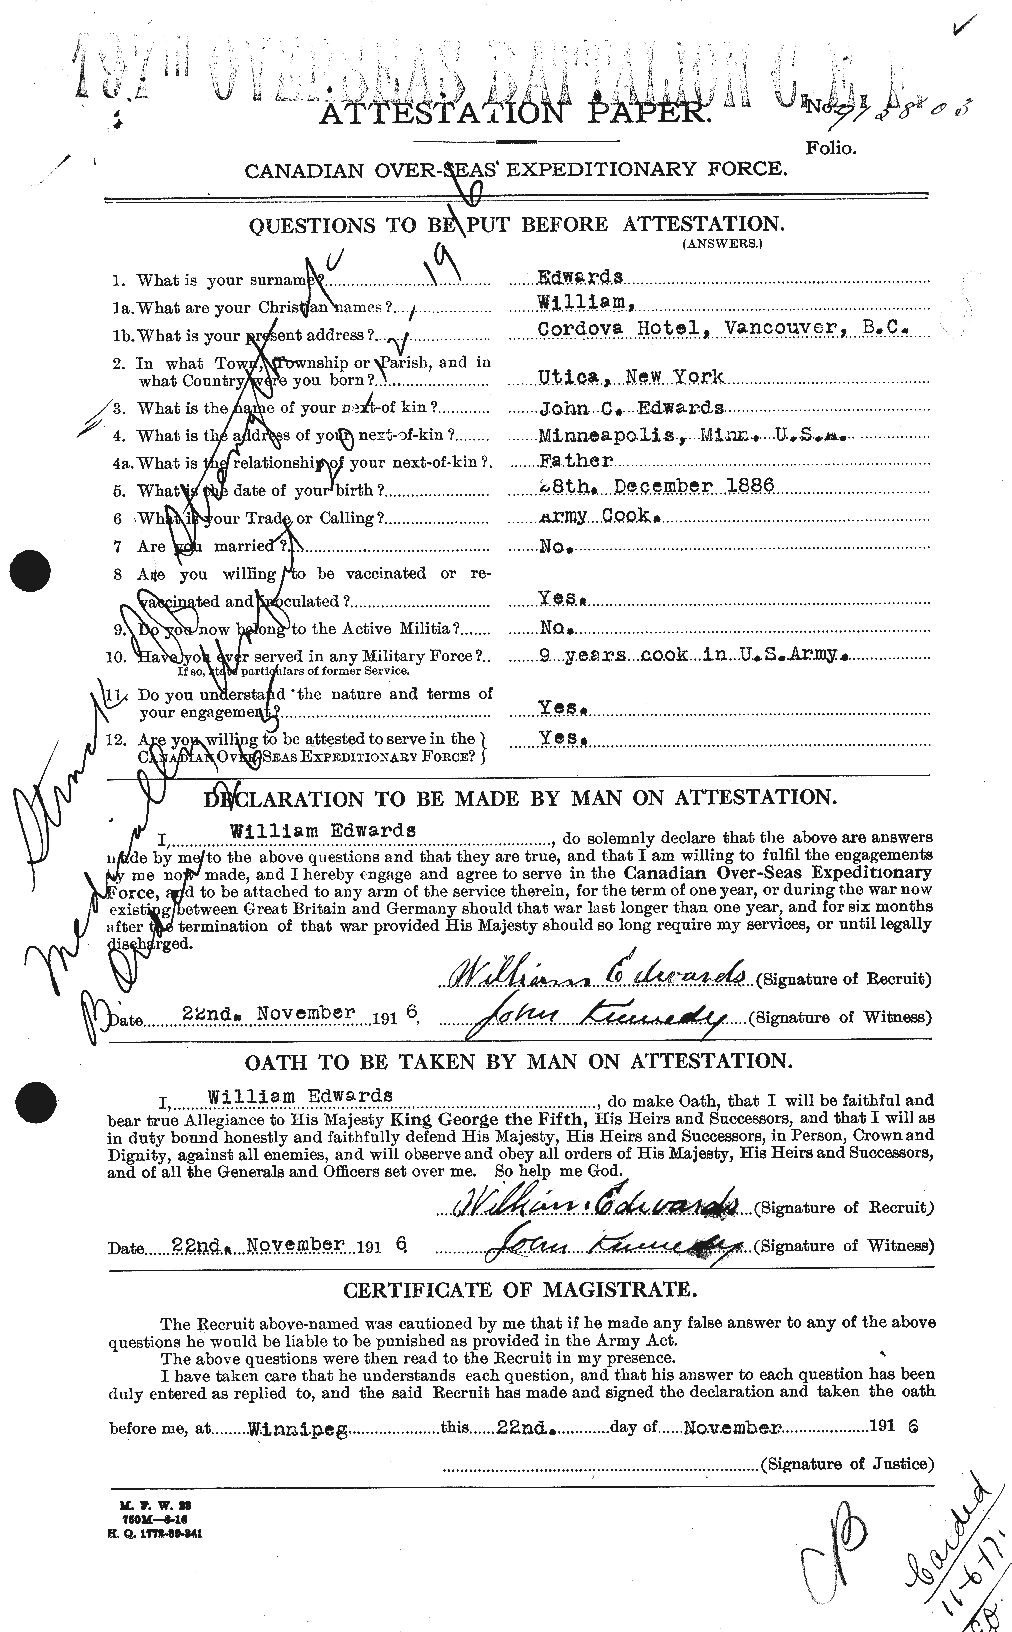 Dossiers du Personnel de la Première Guerre mondiale - CEC 310400a